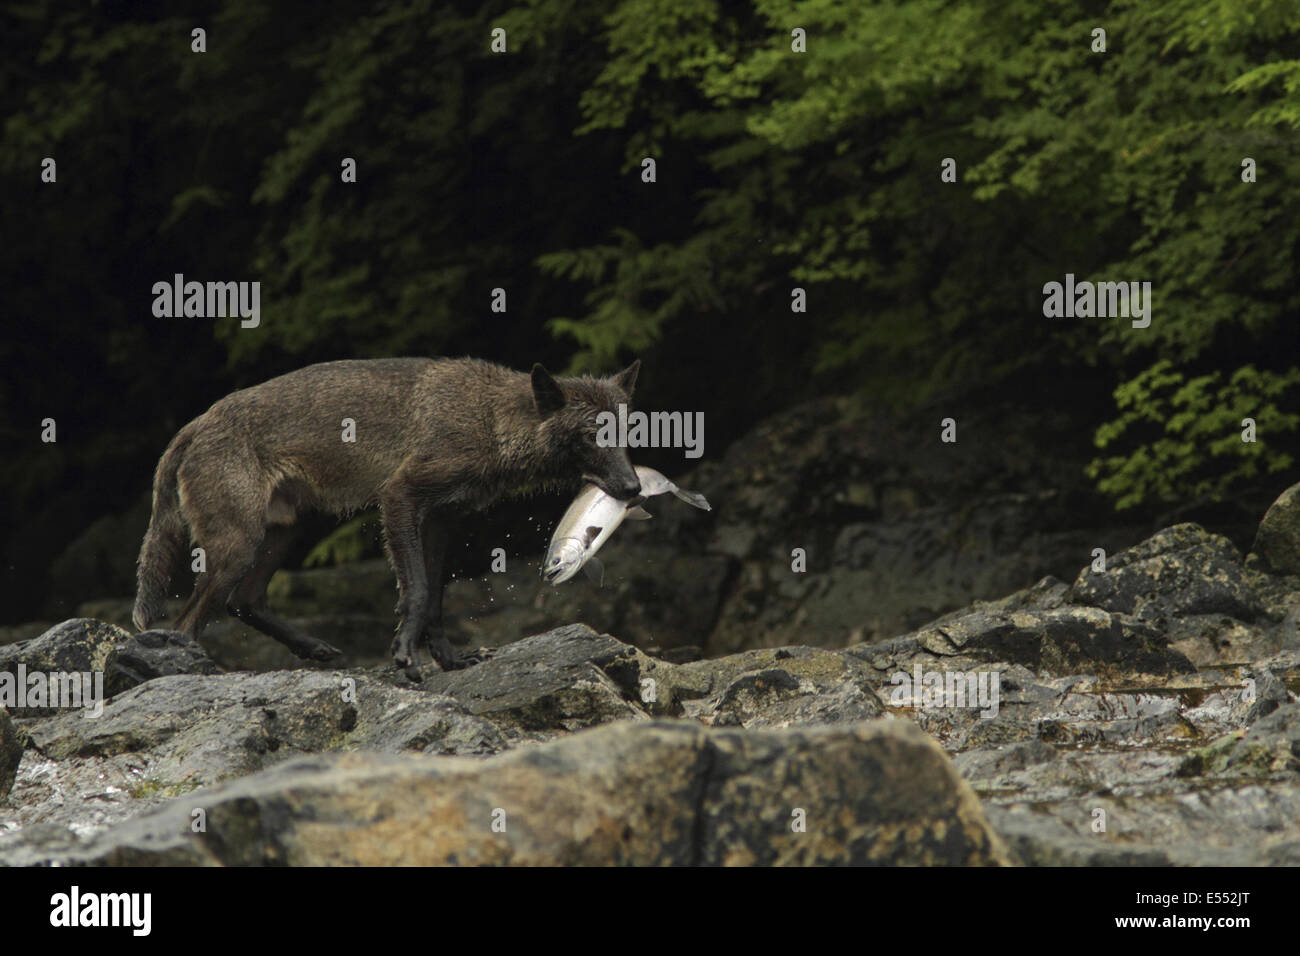 Graue Wolf (Canis Lupus) dark Morph, Erwachsene, Fütterung auf Silberlachs (Oncorhynchus Kisutch) in Fluss, in gemäßigten Küsten-Regenwald, Küste-Berge, Great Bear Rainforest, Britisch-Kolumbien, Kanada, August Stockfoto